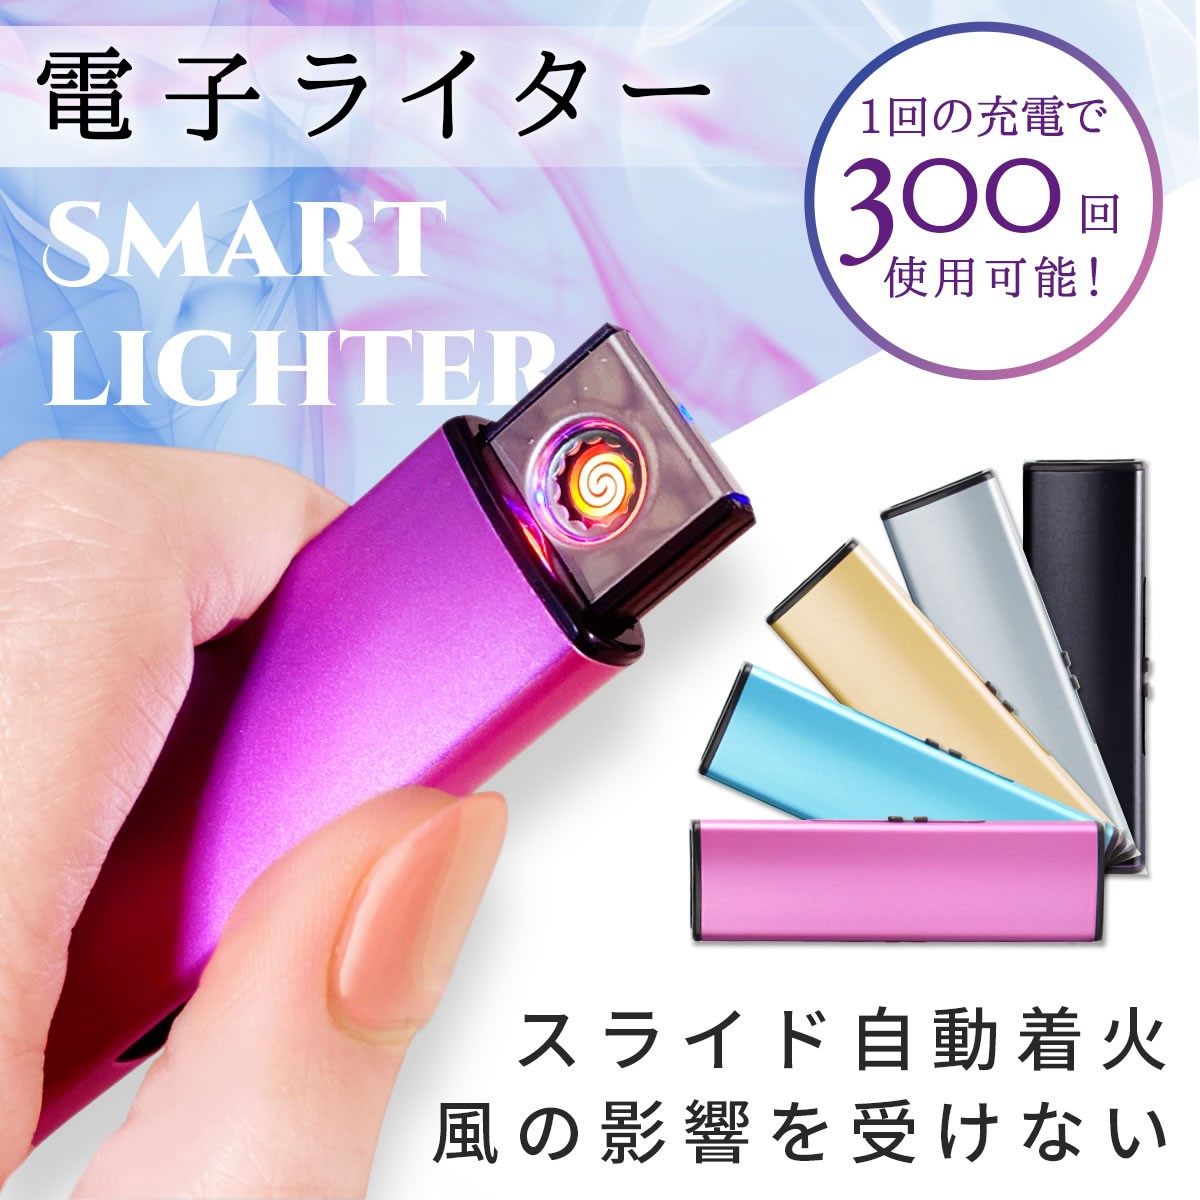 日本最大級 USB 充電式 ライター 電子ライター ブラック